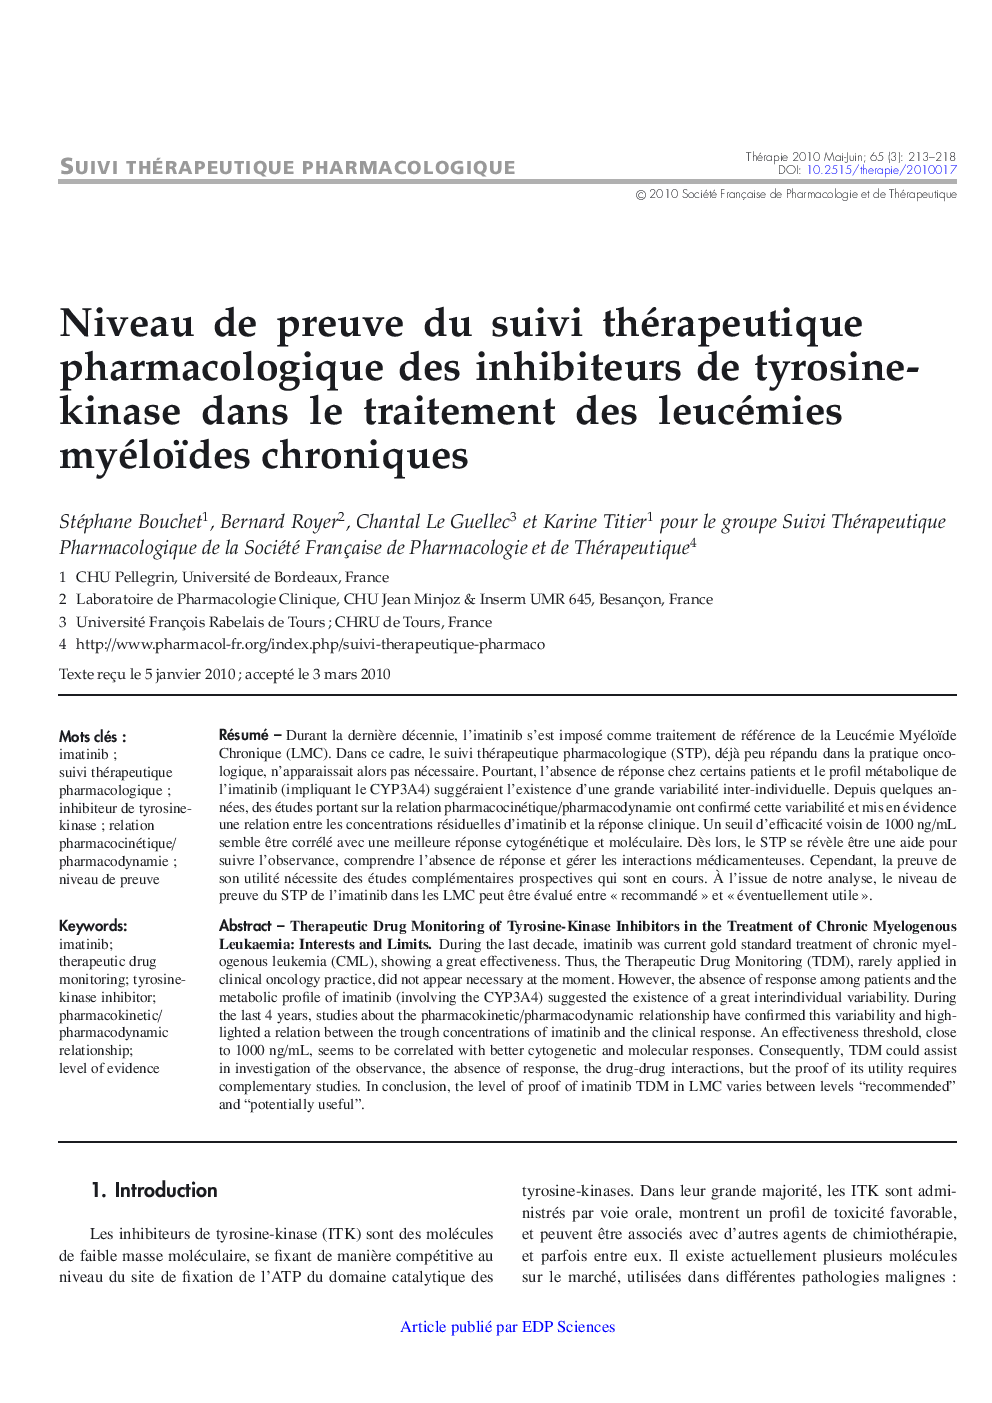 Niveau de preuve du suivi thérapeutique pharmacologique des inhibiteurs de tyrosine-kinase dans le traitement des leucémies myéloïdes chroniques